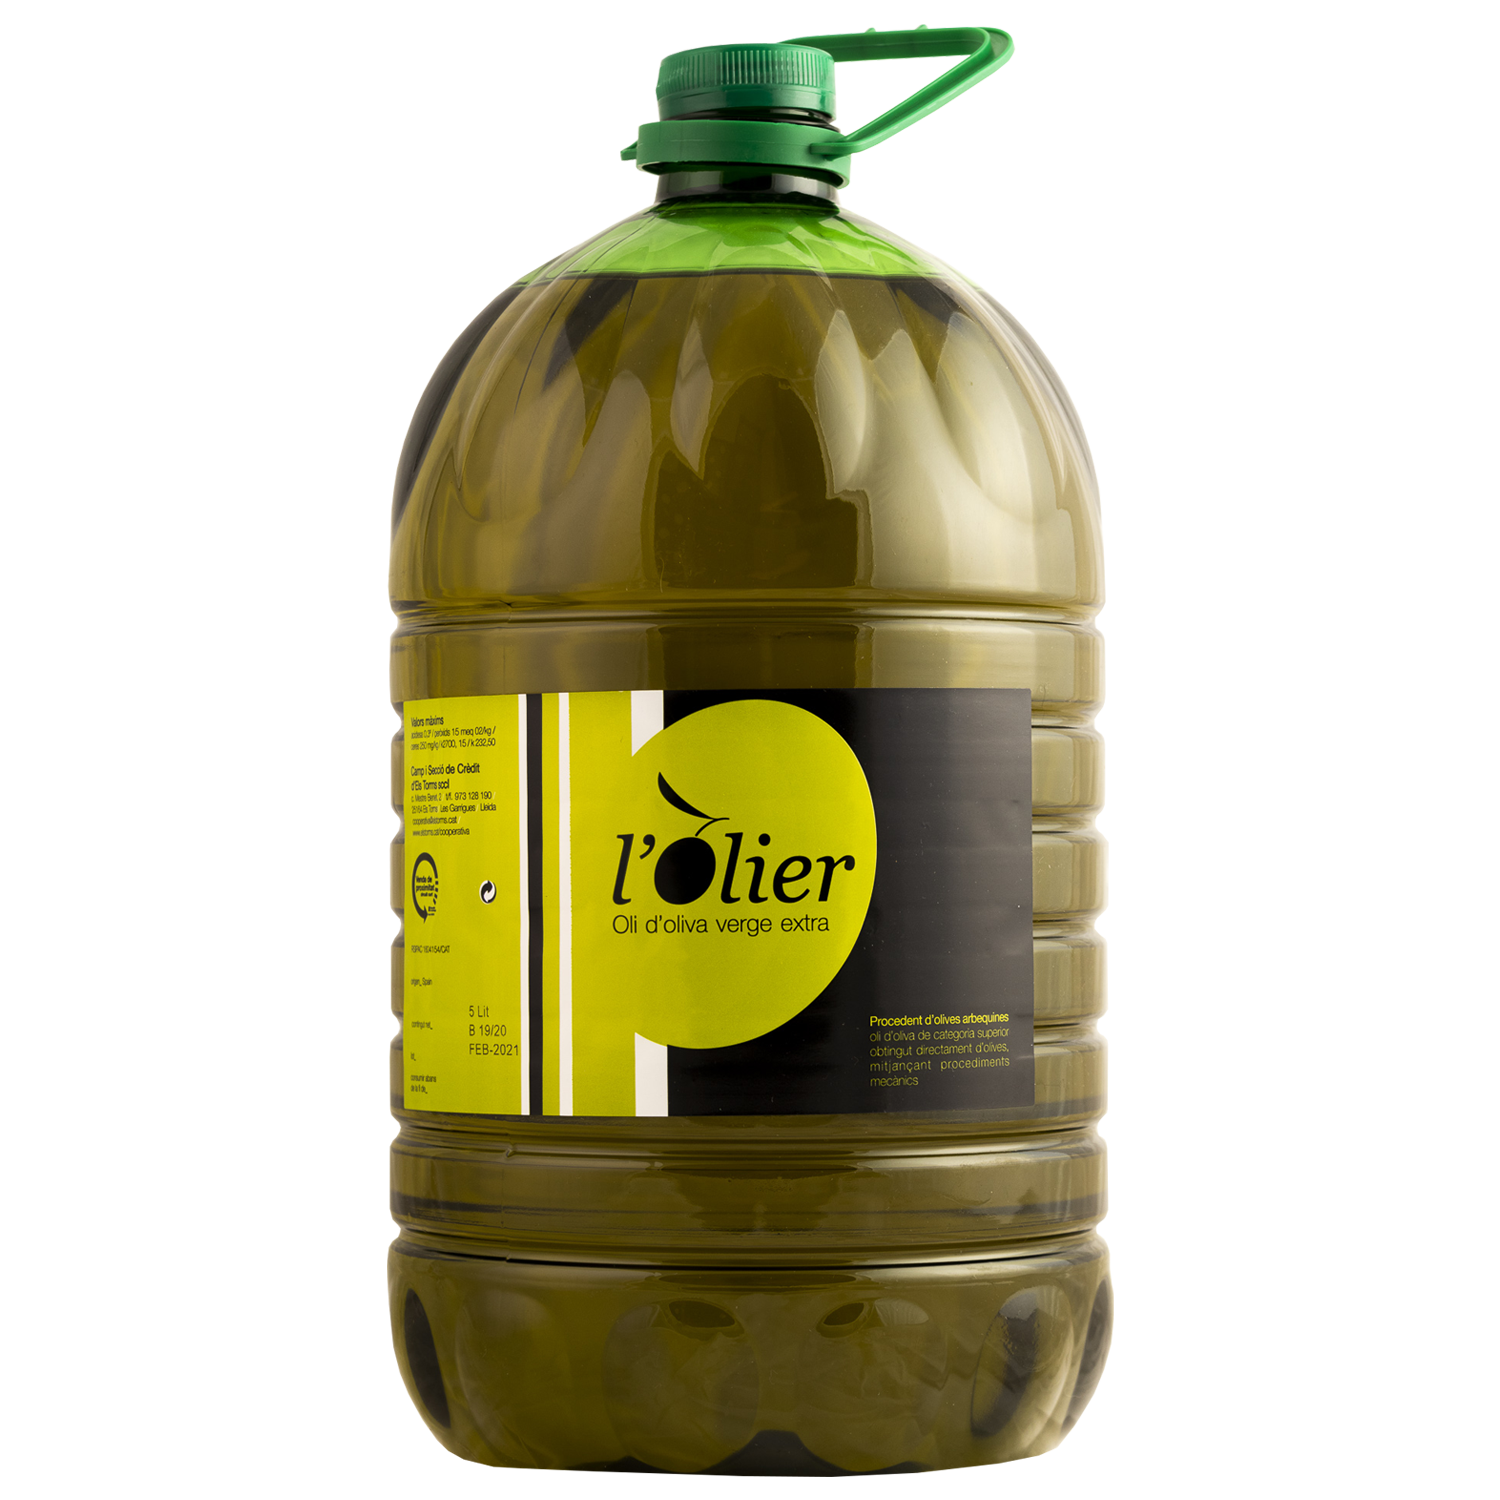 5l olive oil bottle, olive oil deals. Spanish extra virgin olive oil